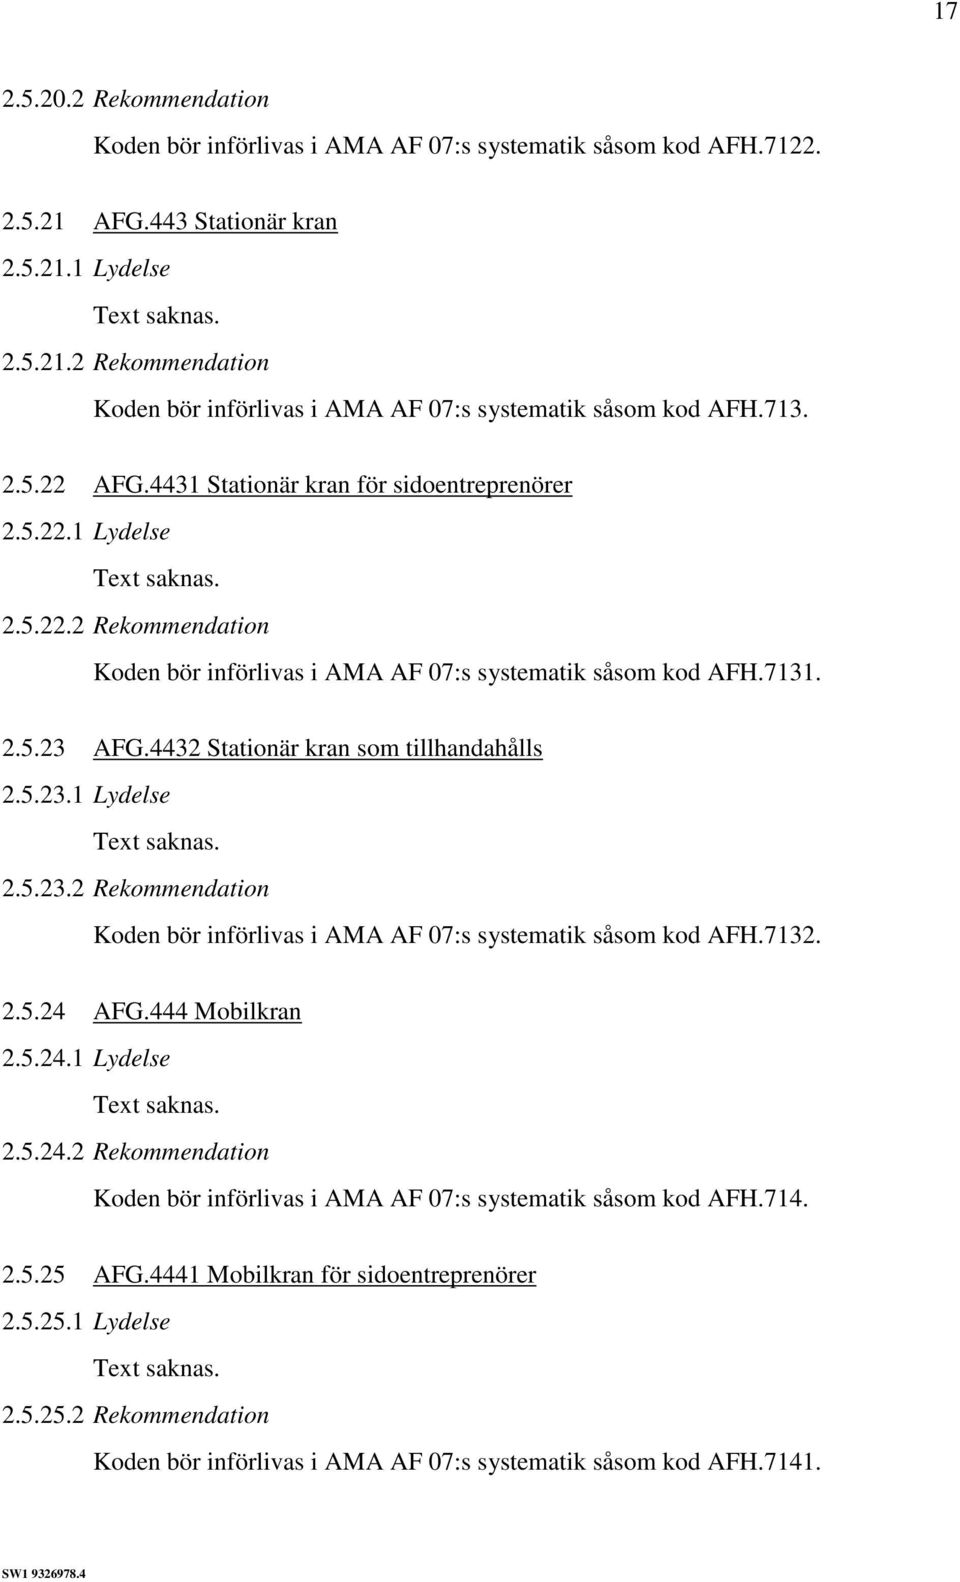 4432 Stationär kran som tillhandahålls 2.5.23.1 Lydelse 2.5.23.2 Rekommendation Koden bör införlivas i AMA AF 07:s systematik såsom kod AFH.7132. 2.5.24 